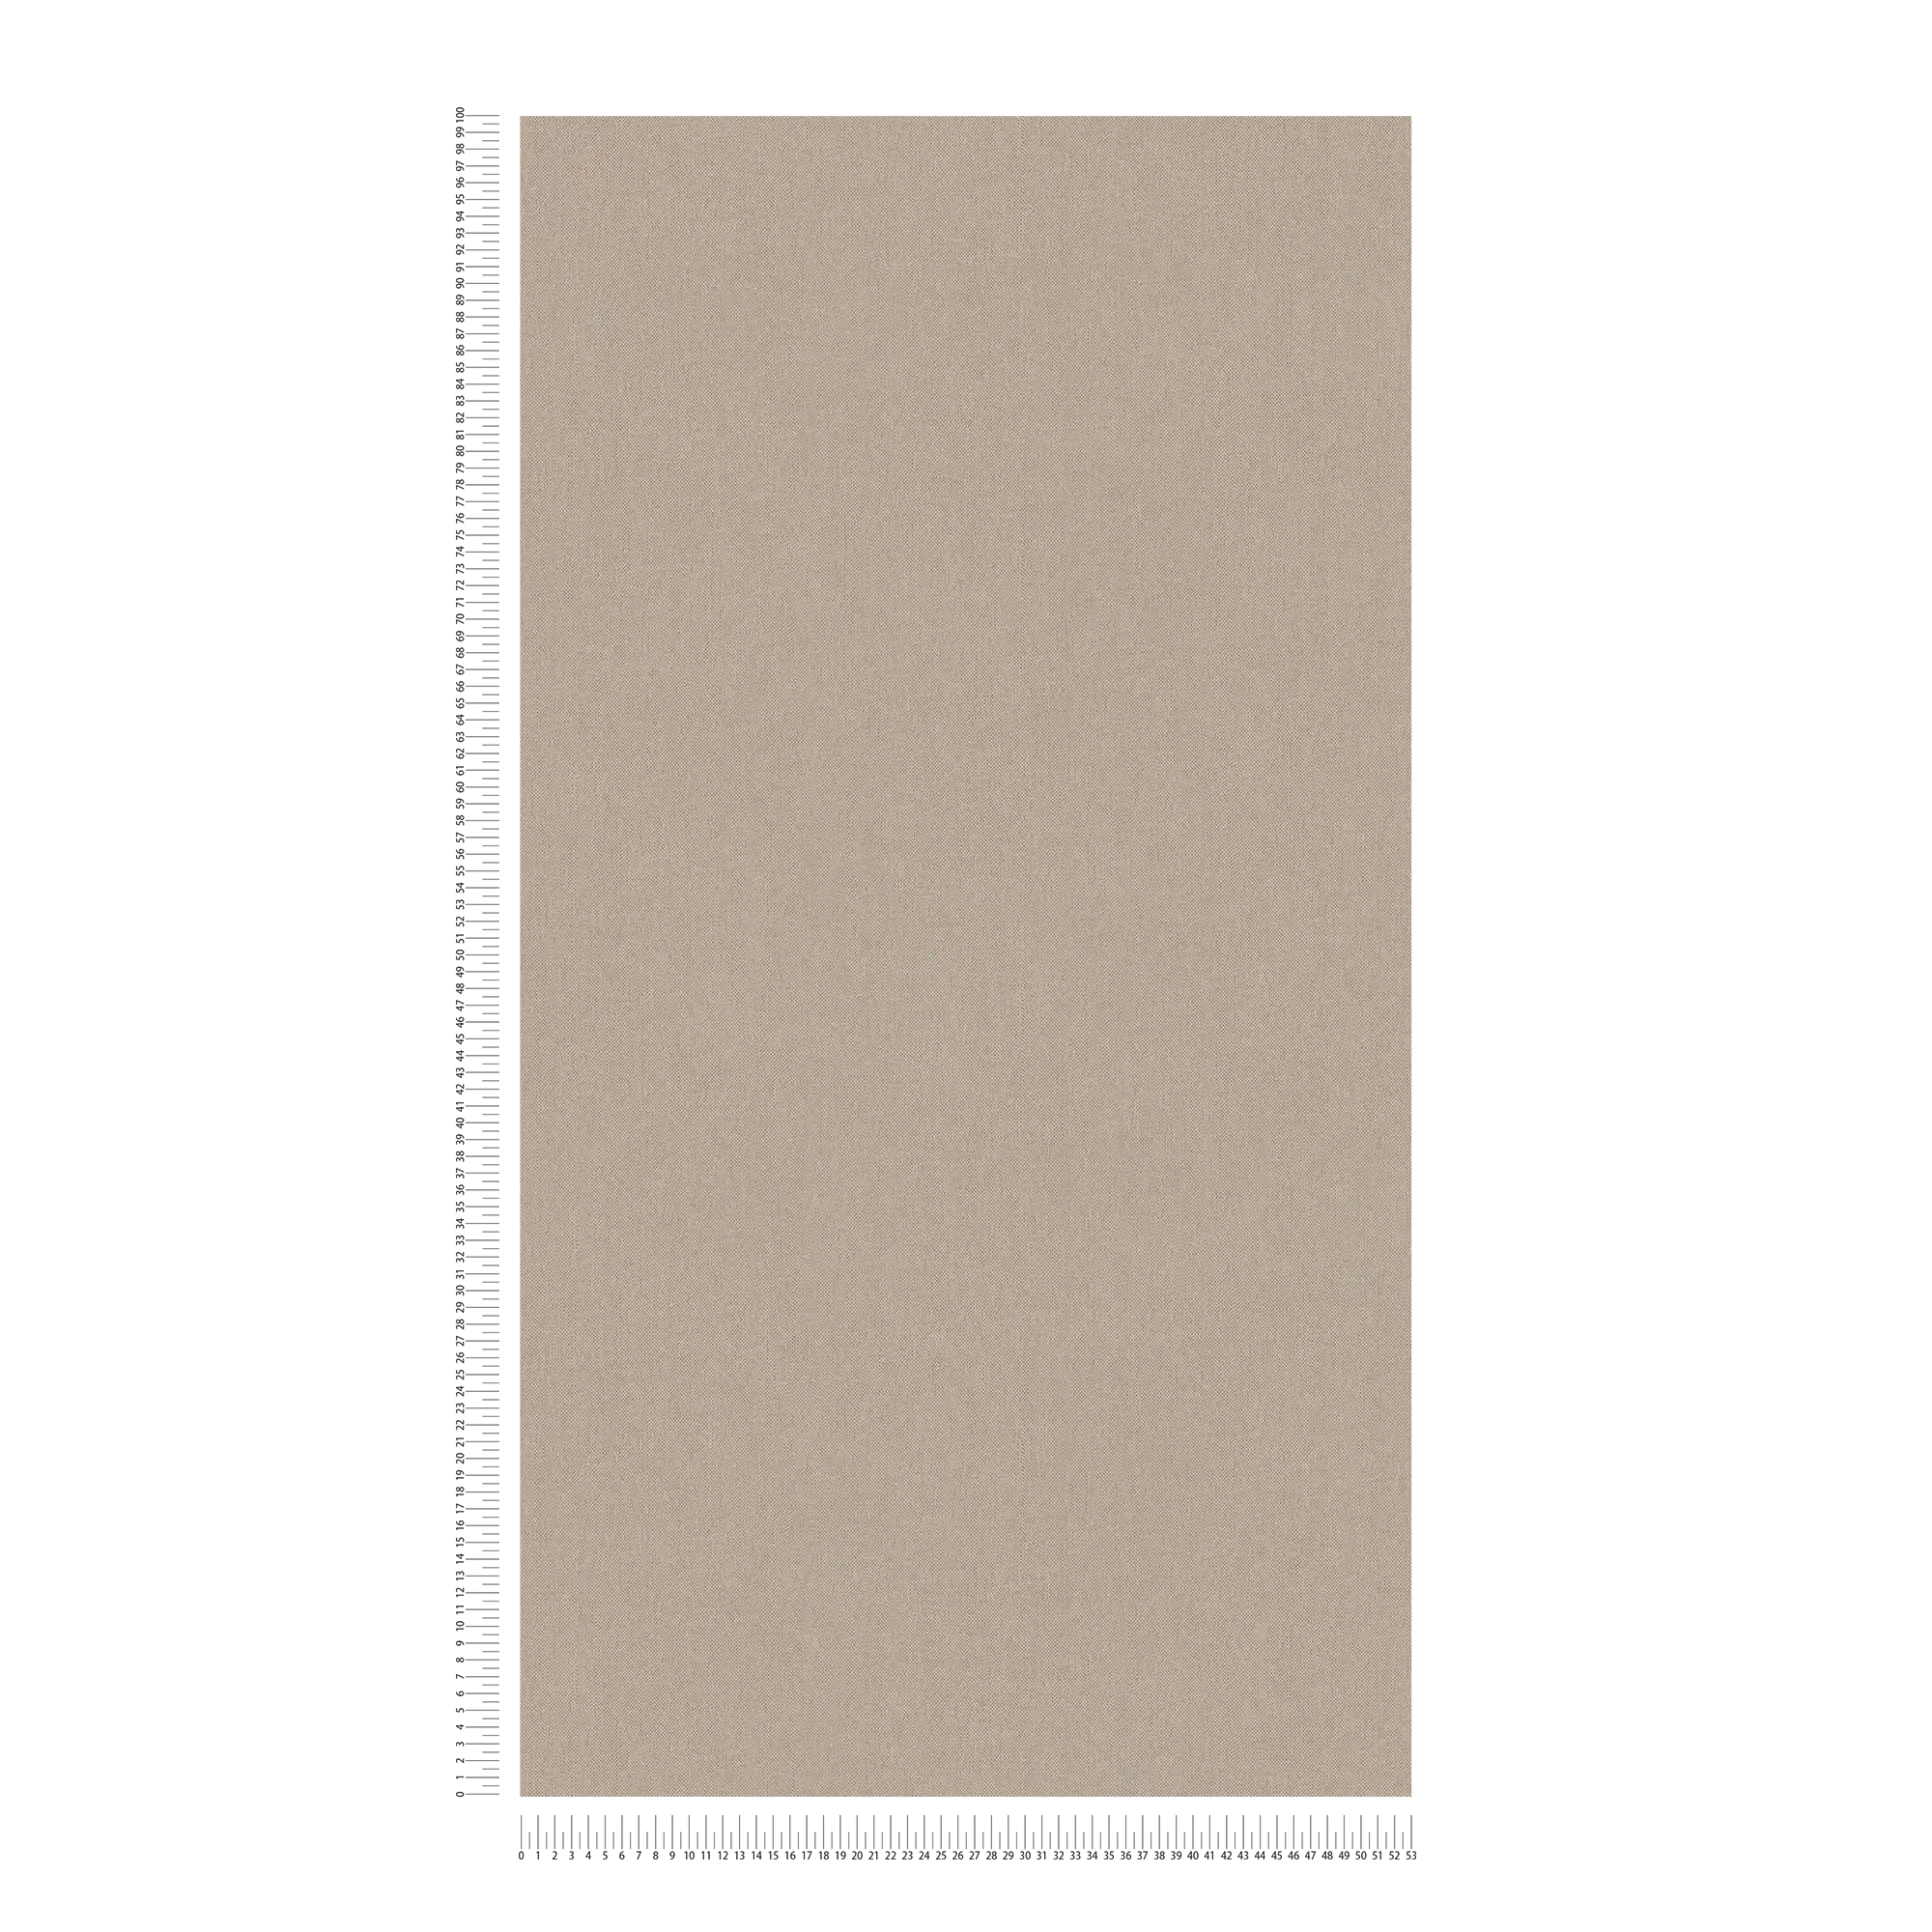             Carta da parati in tessuto non tessuto beige tinta unita e opaca con struttura tessile - beige, marrone
        